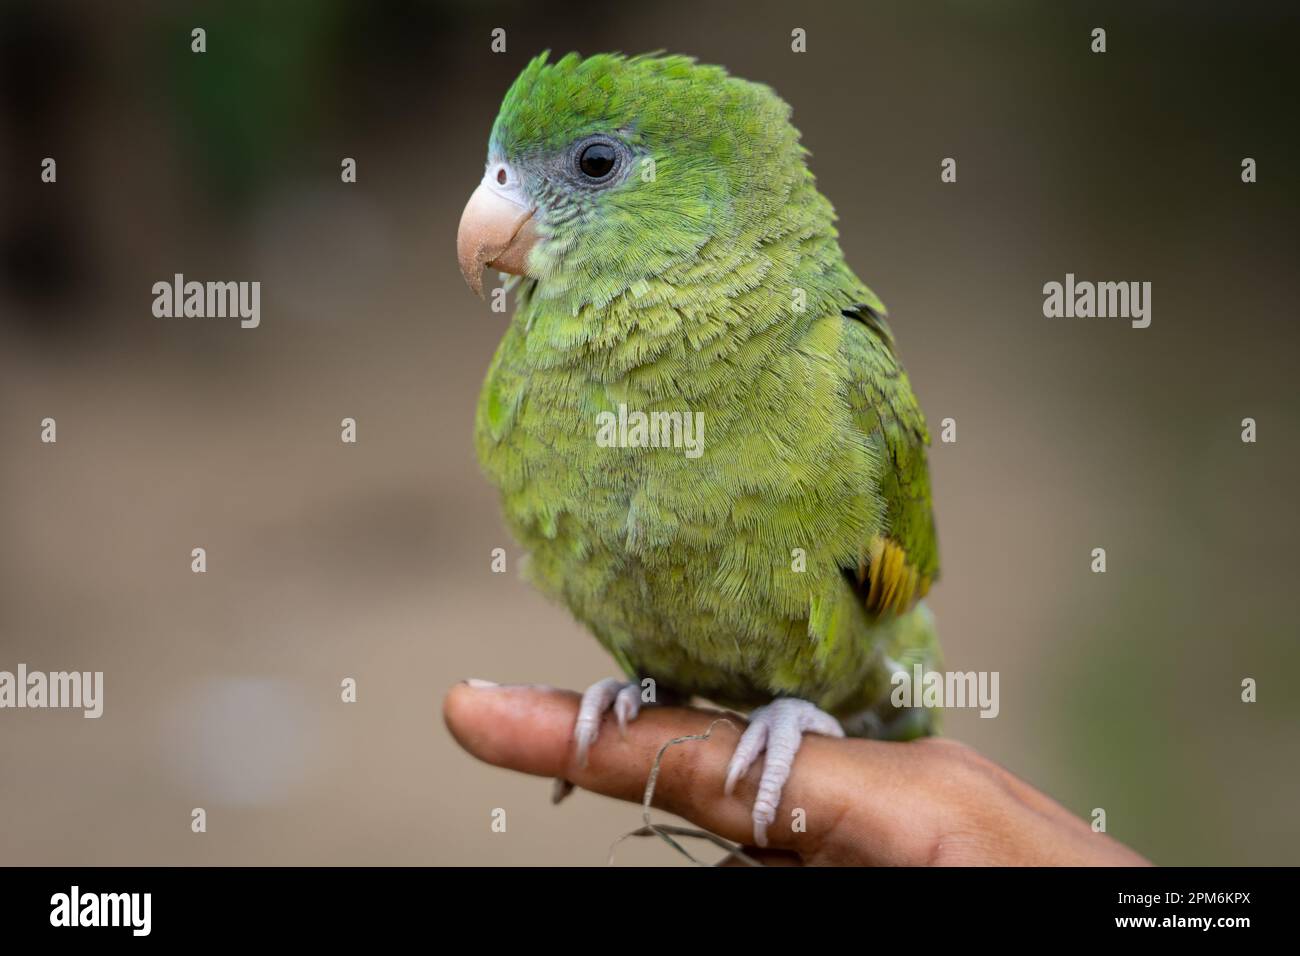 Les perroquets Amazon sont principalement verts et sont très prisés pour leurs capacités de conversation Banque D'Images